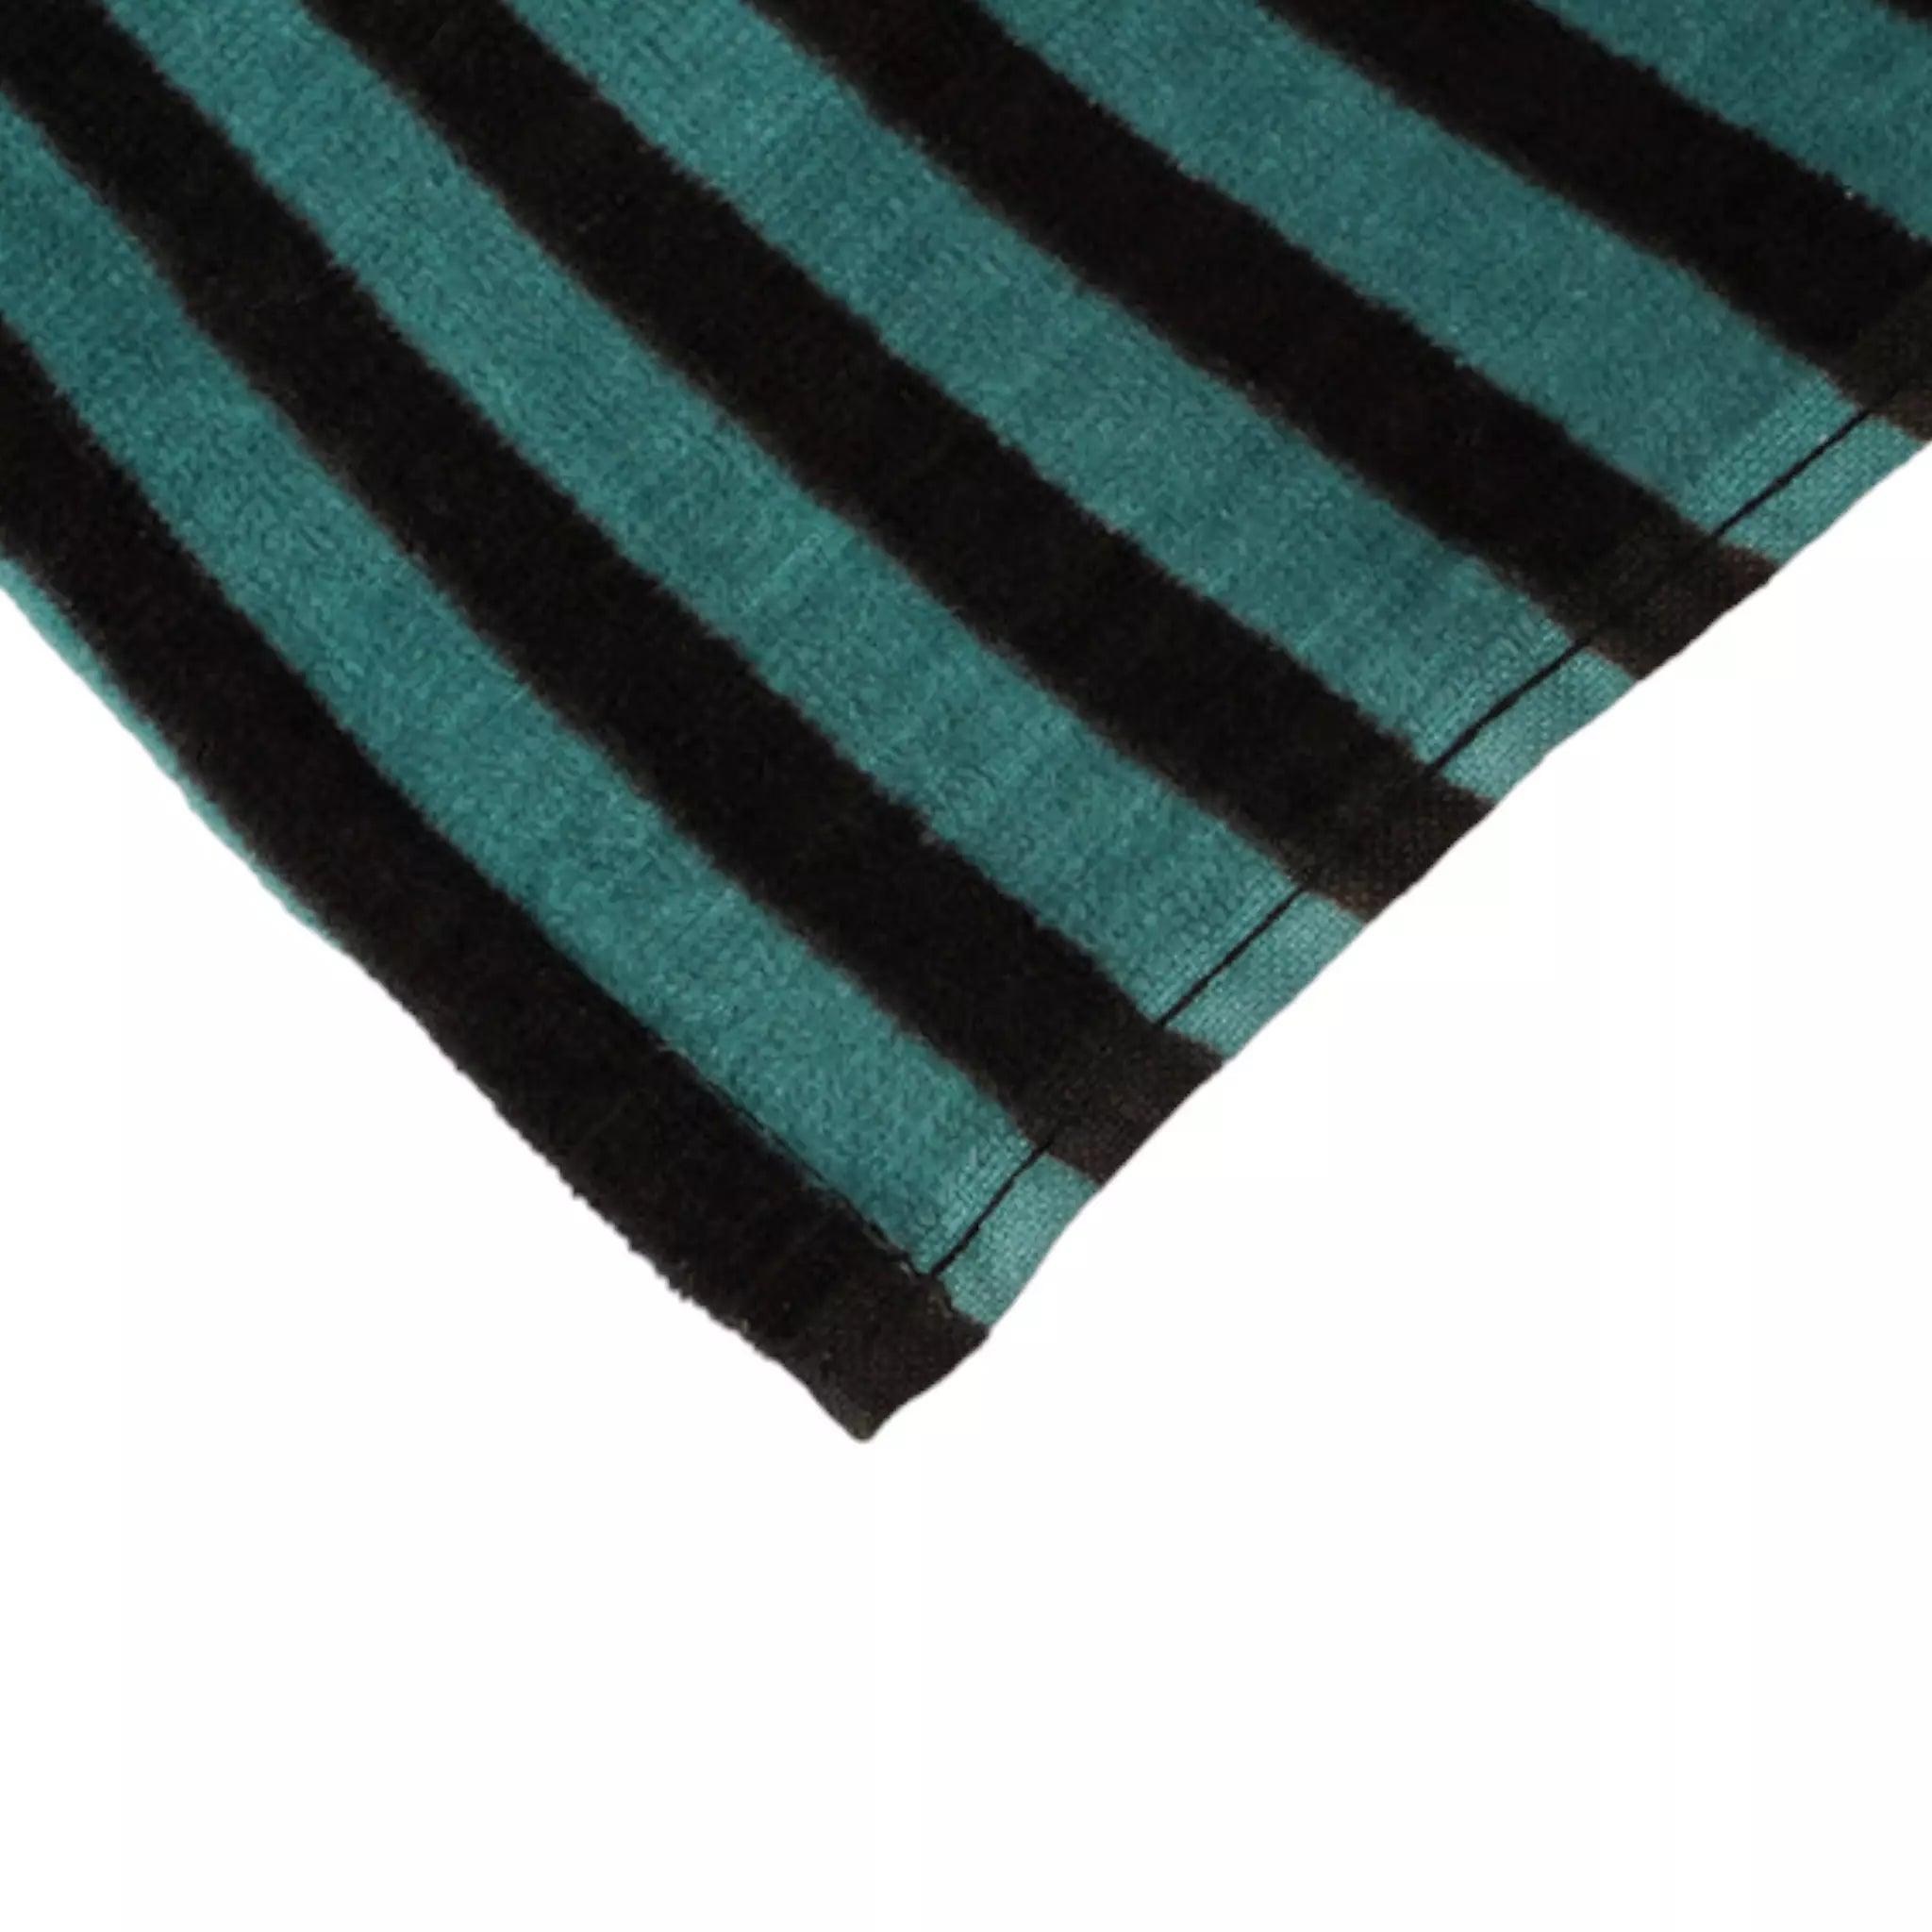 Printed Microfabric Towel - Dash Racegear 